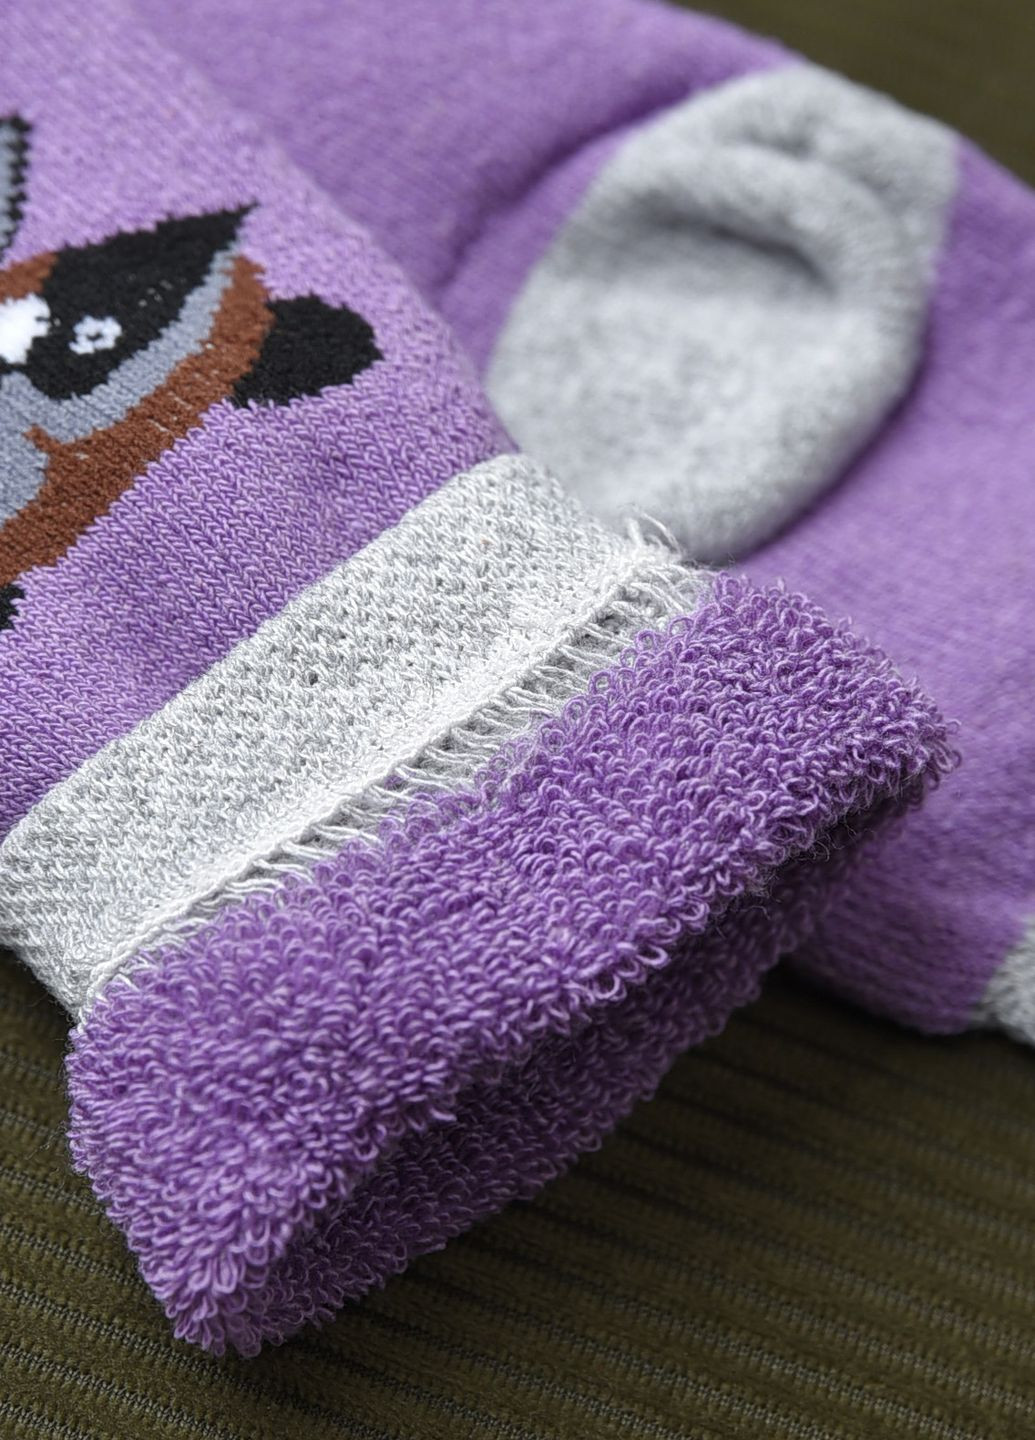 Шкарпетки махрові дитячі фіолетового кольору з малюнком Let's Shop (269692576)